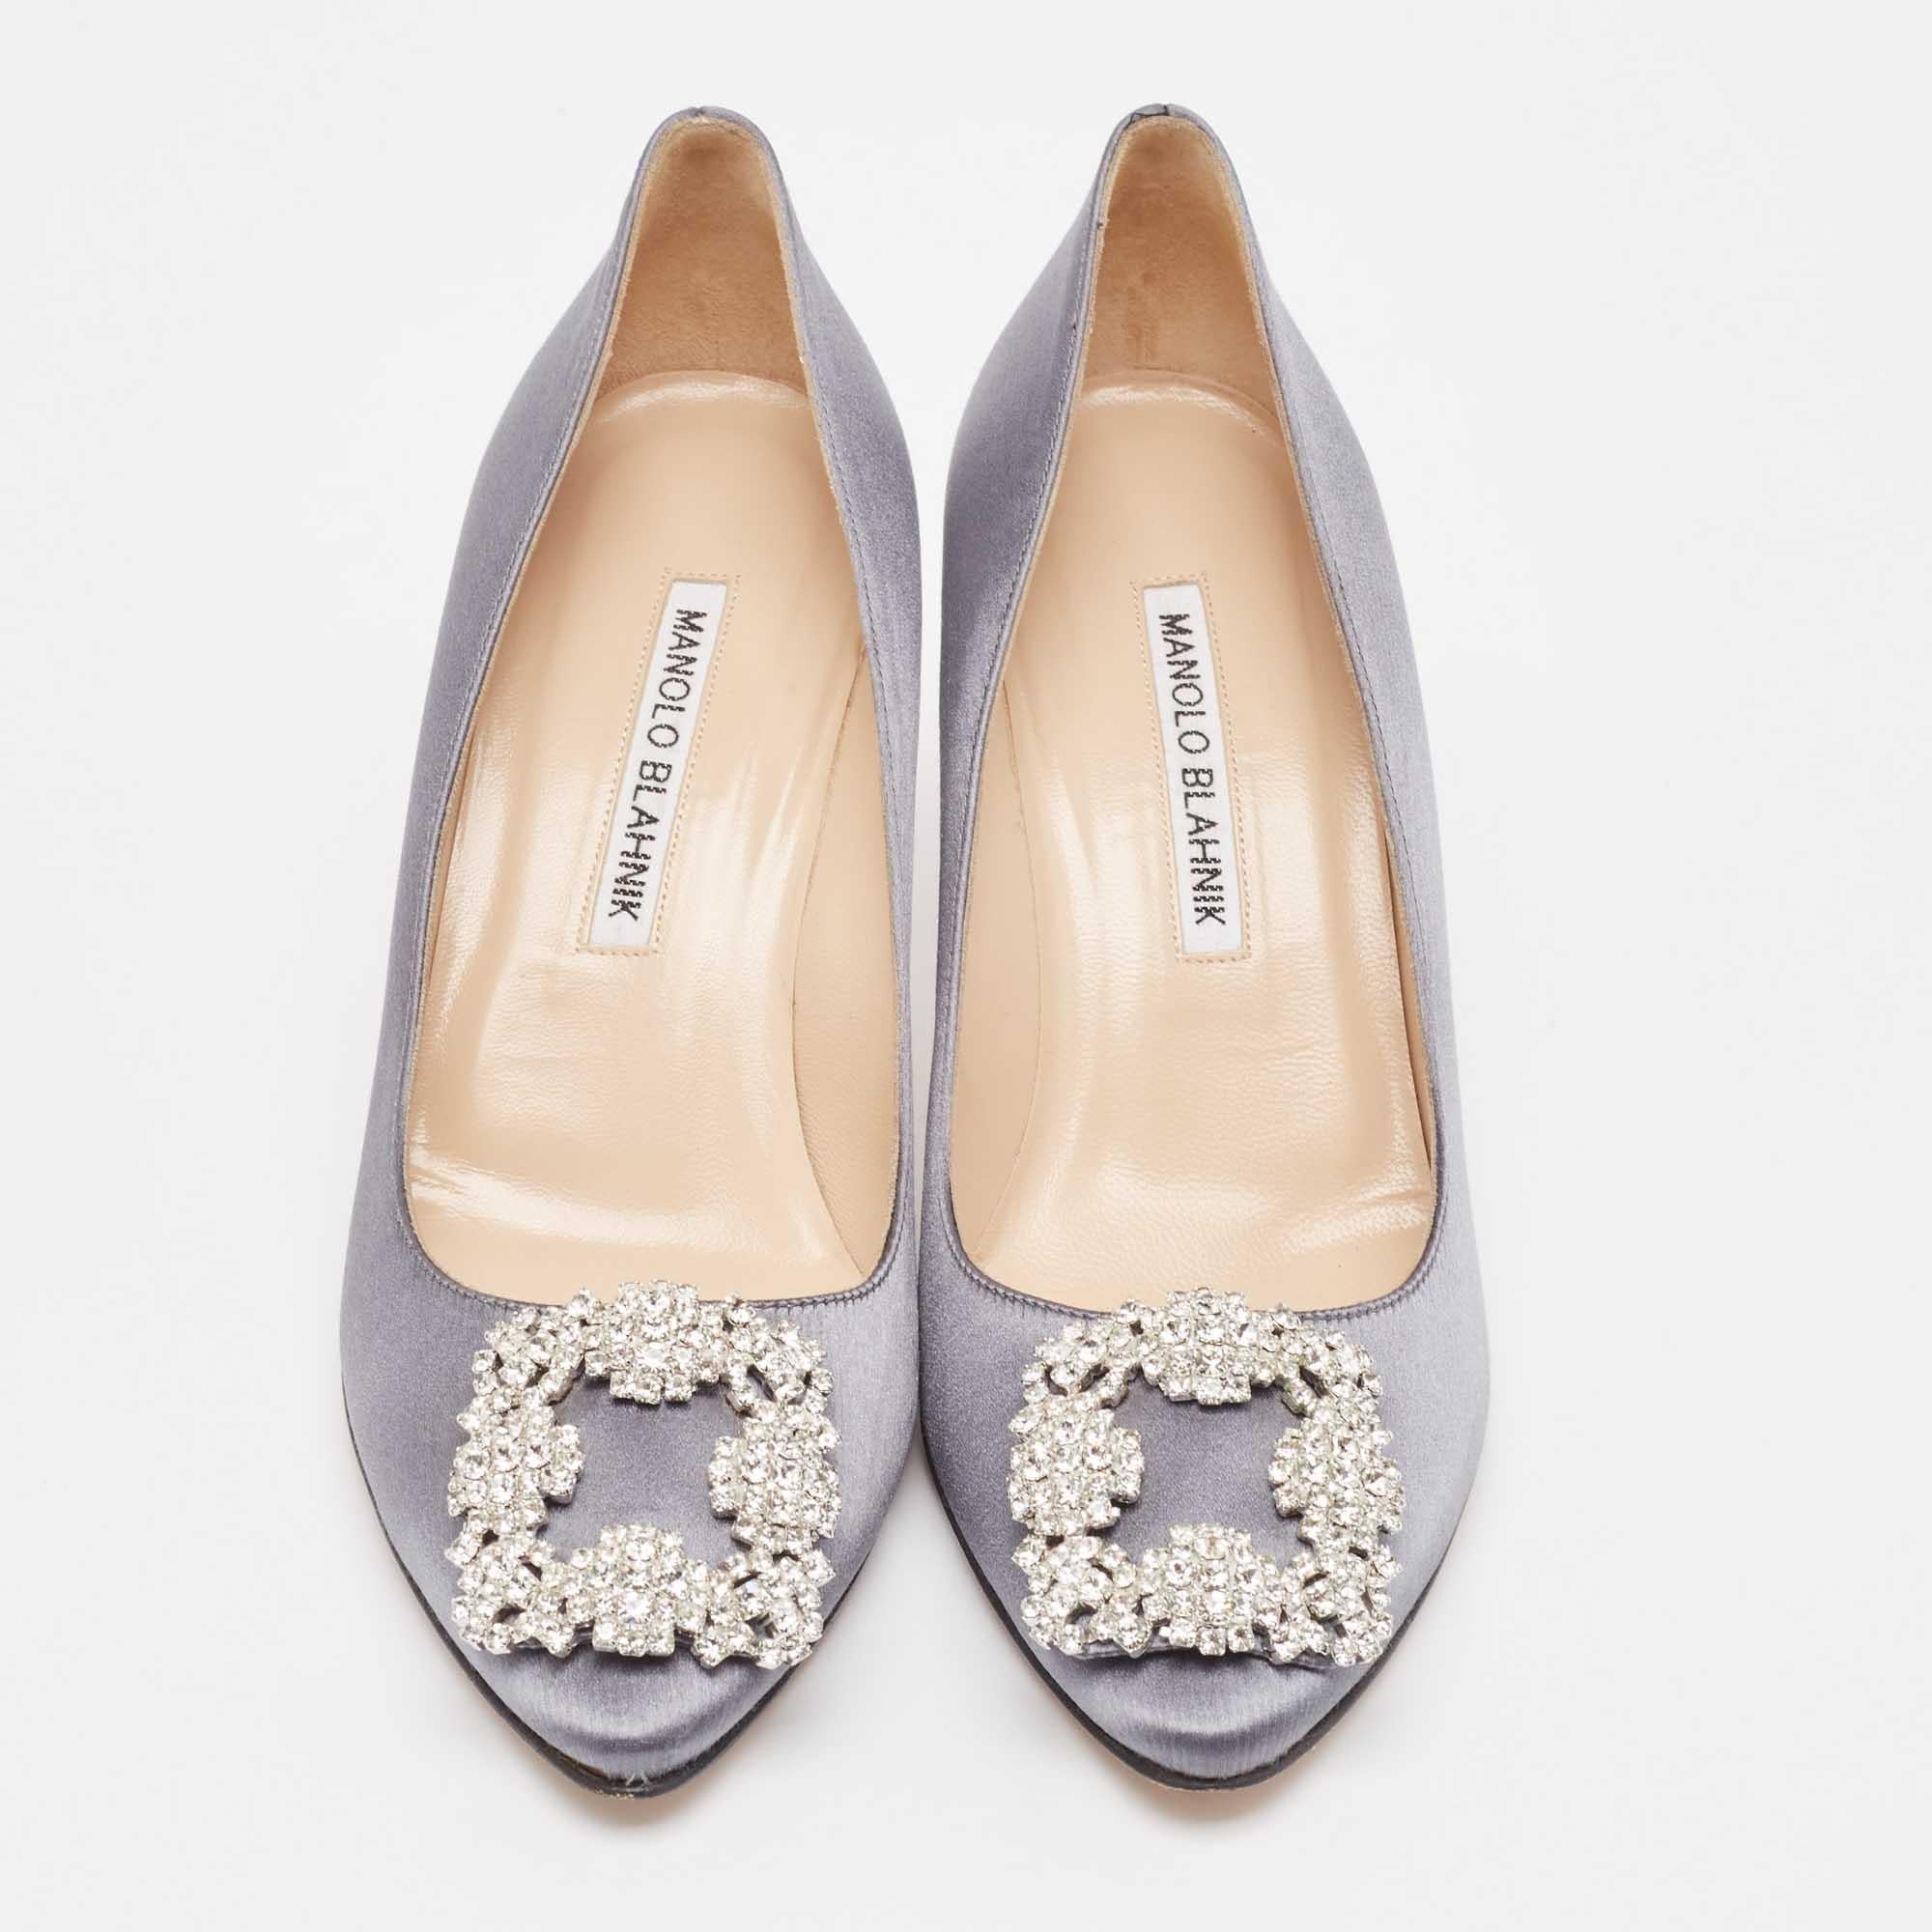 Complétez votre tenue avec ces authentiques chaussures grises Manolo Blahnik. Intemporelles et élégantes, elles bénéficient d'une construction étonnante pour une qualité durable et une tenue confortable.

Comprend : Sac à poussière original

